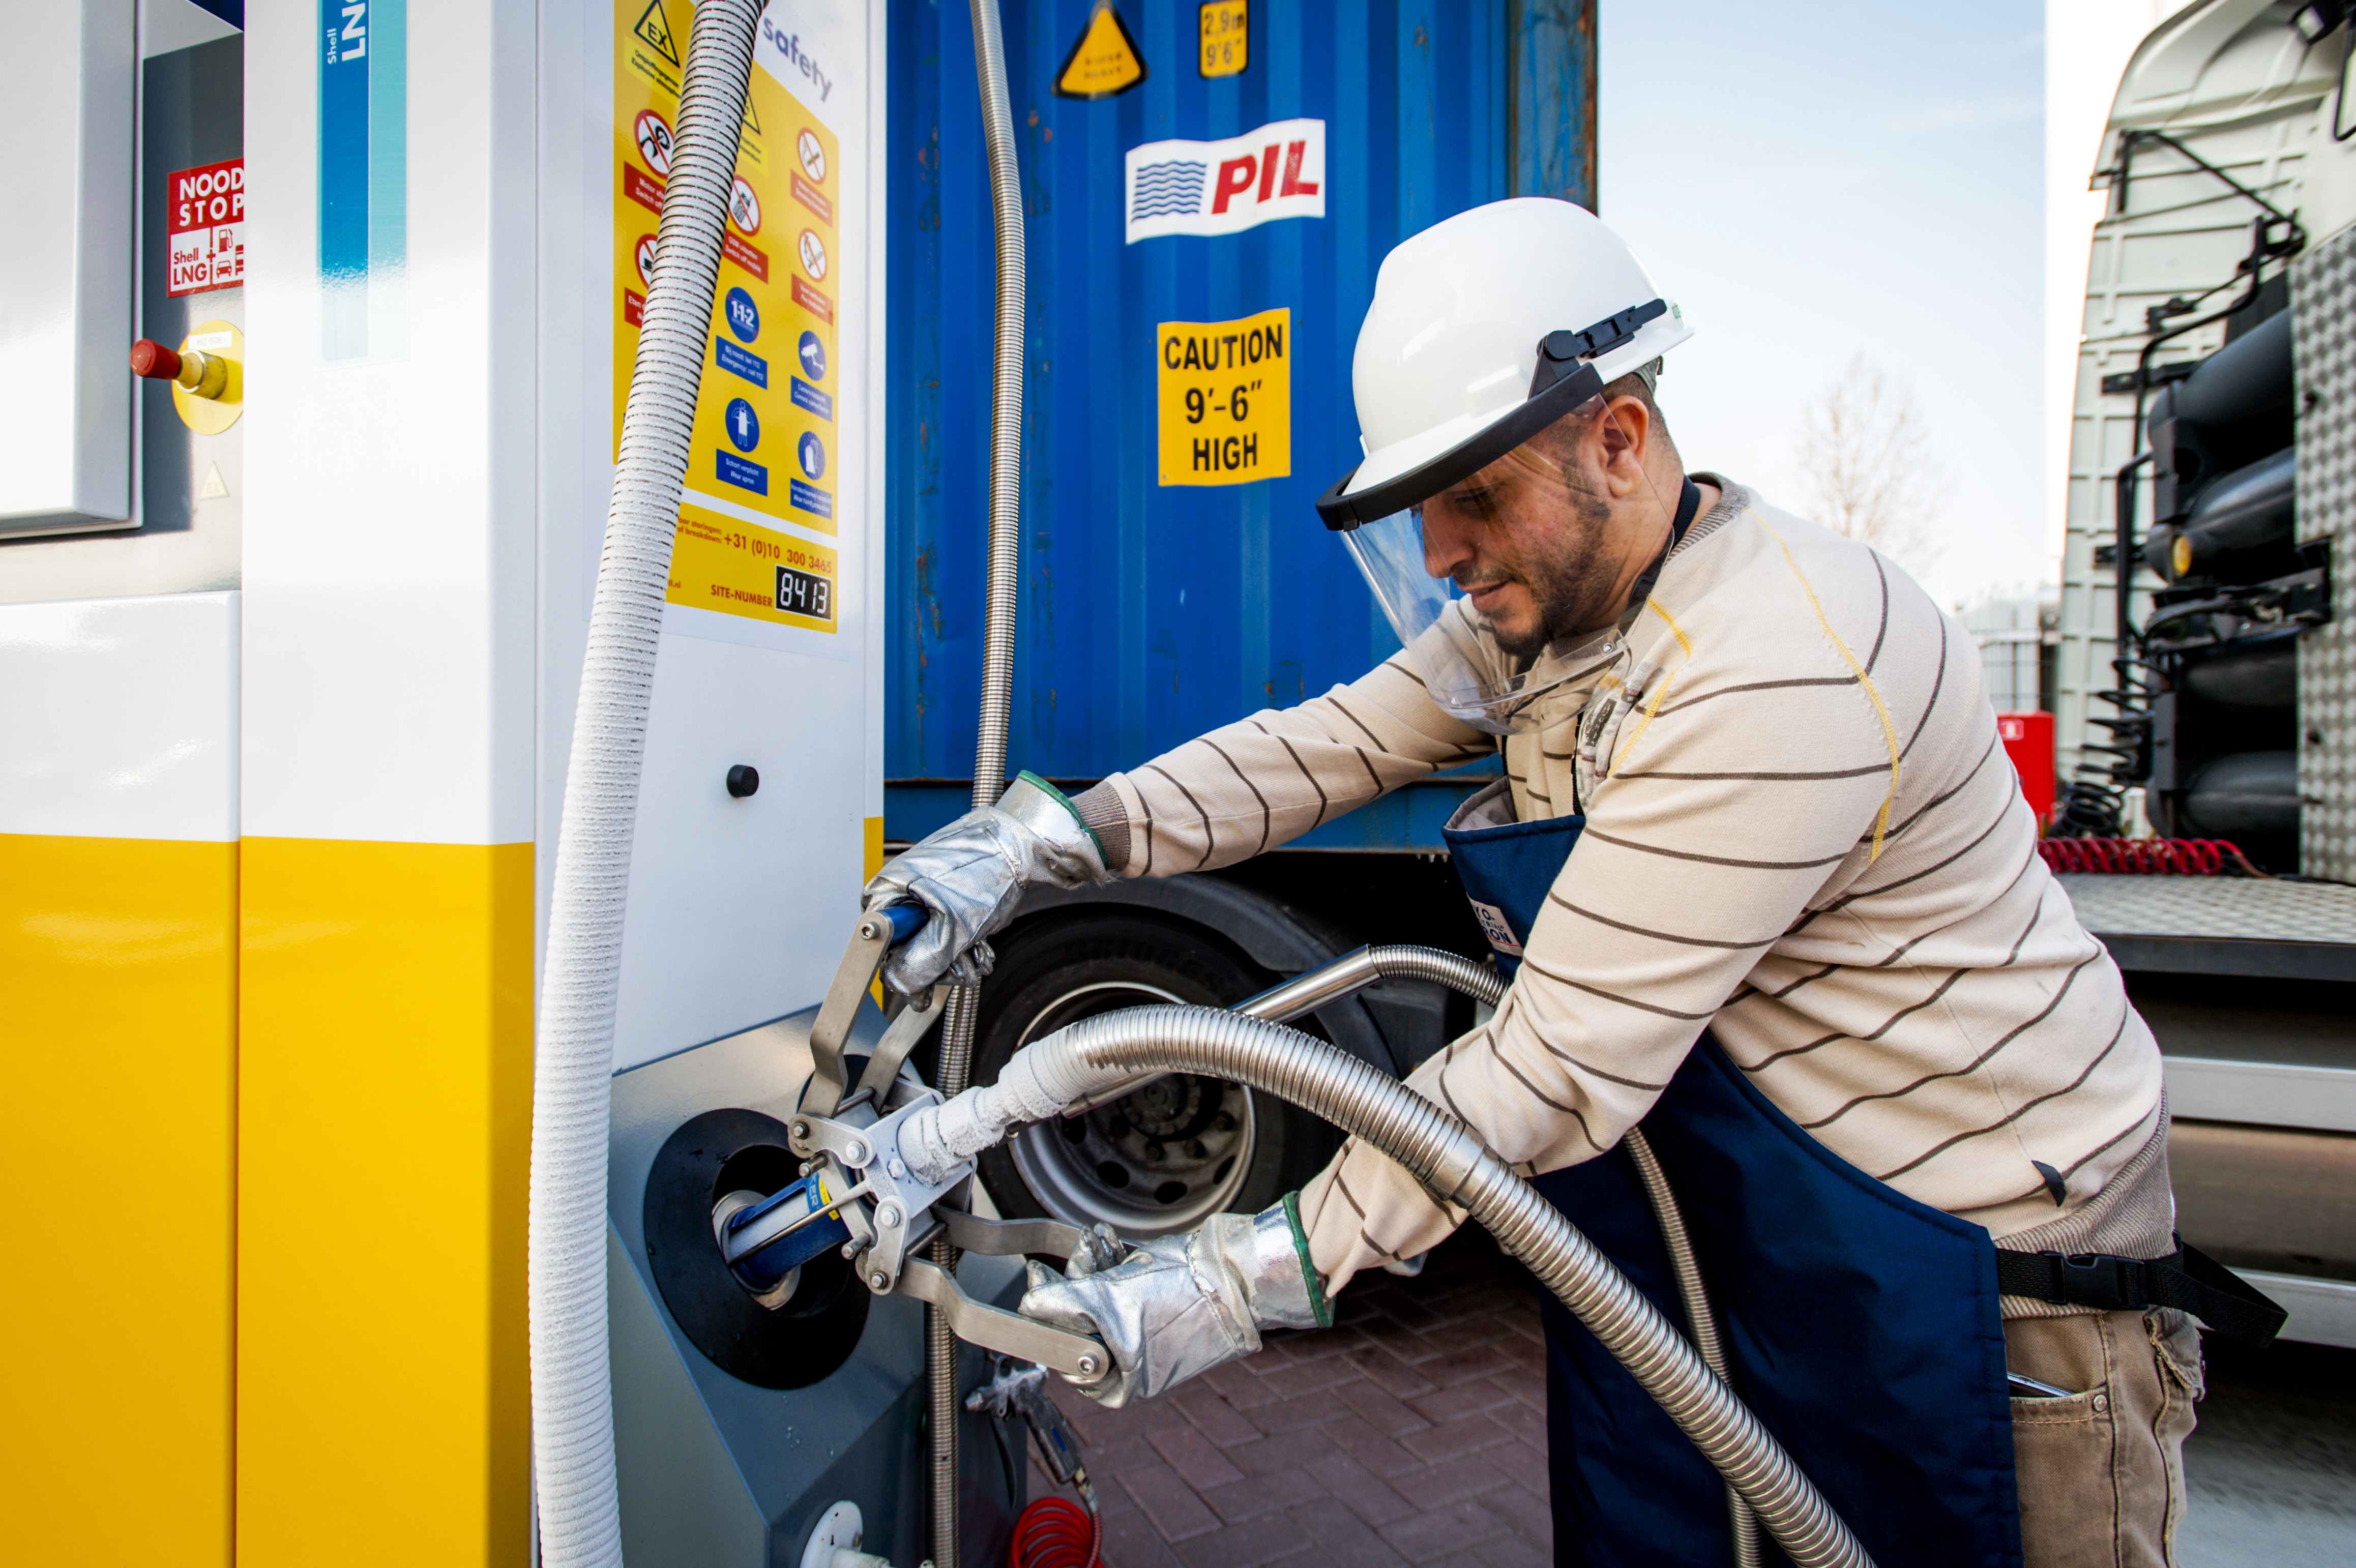 2015-03-19 16:00:31 ROTTERDAM - Shell heeft in Rotterdam Waalhaven het eerste LNG-tankstation (Liquefied Natural Gas) voor vrachtwagens in Europa geopend. Het station ligt nabij de A15, die een belangrijke route vormt voor vrachtwagens richting België, Frankrijk en het Duitse Ruhrgebied. ANP ROBIN VAN LONKHUIJSEN